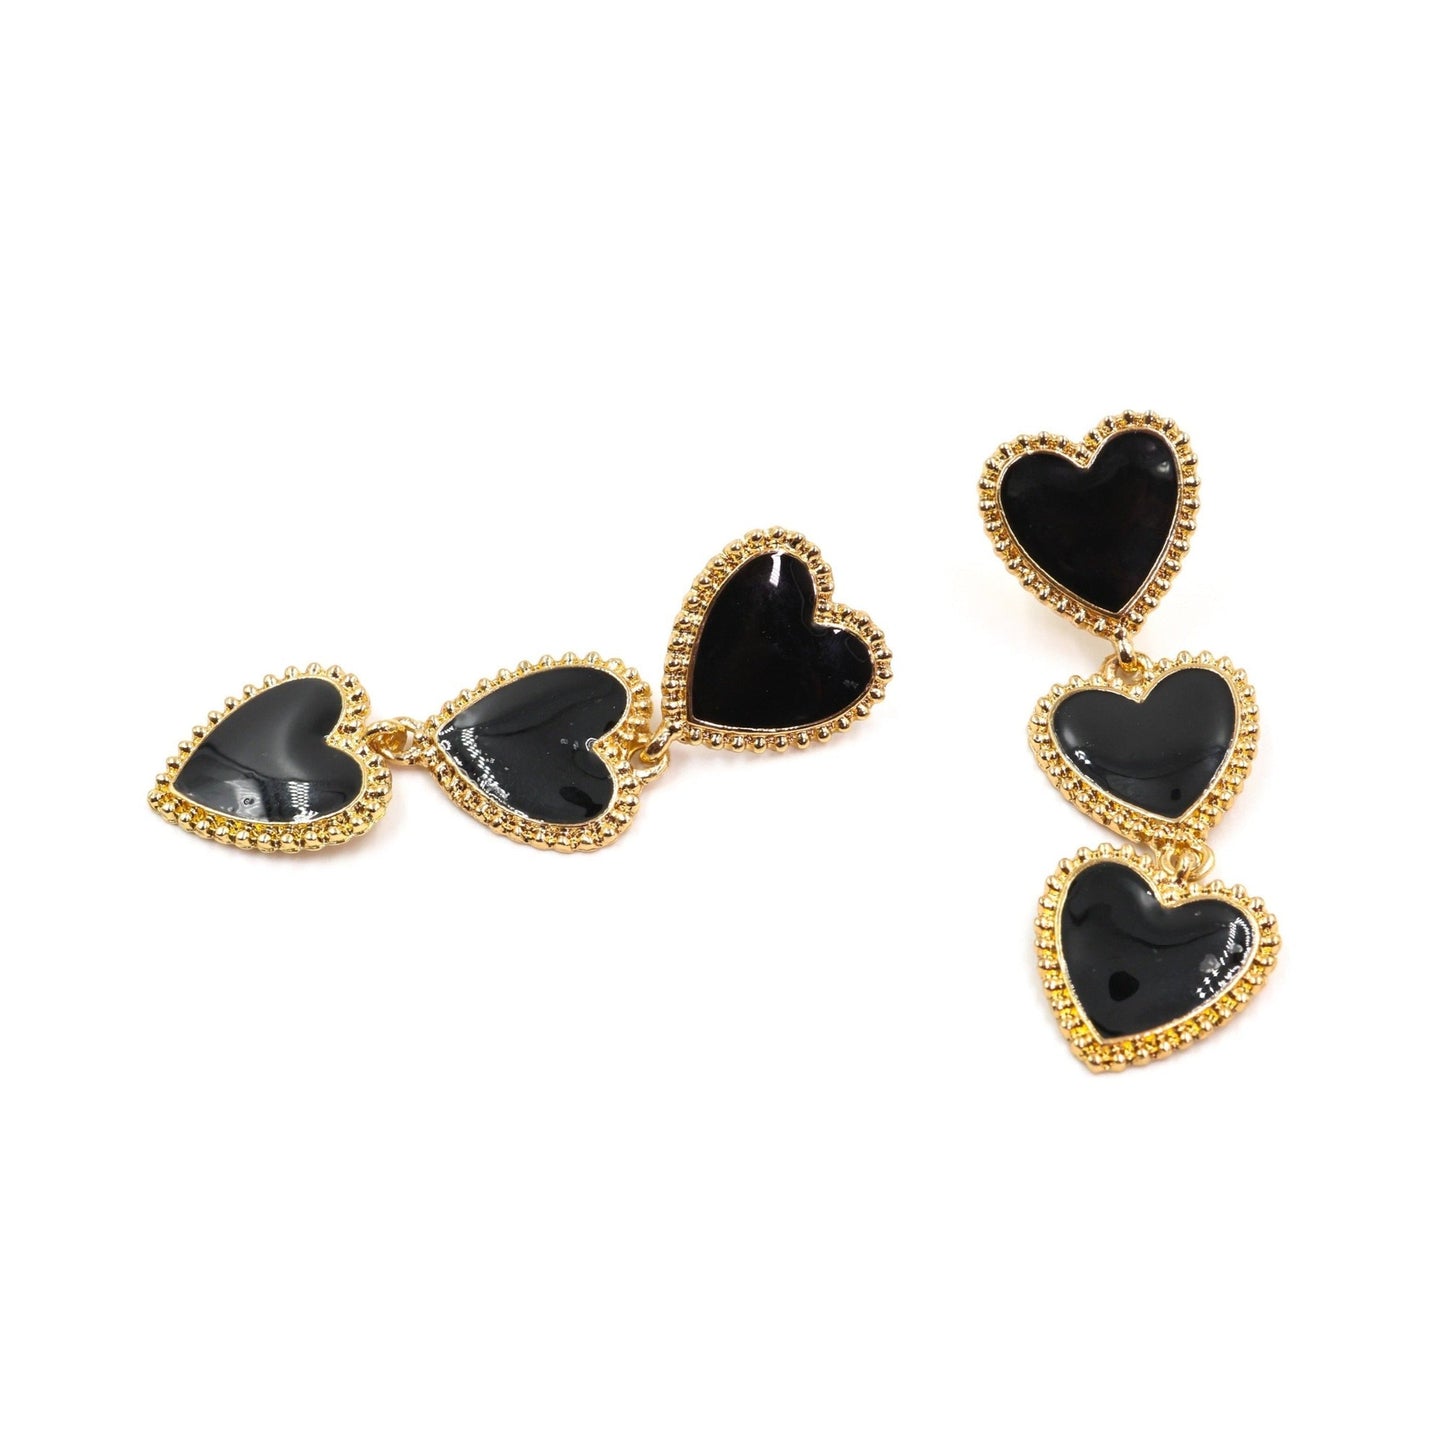 Dark Heart Drop Earrings in Black